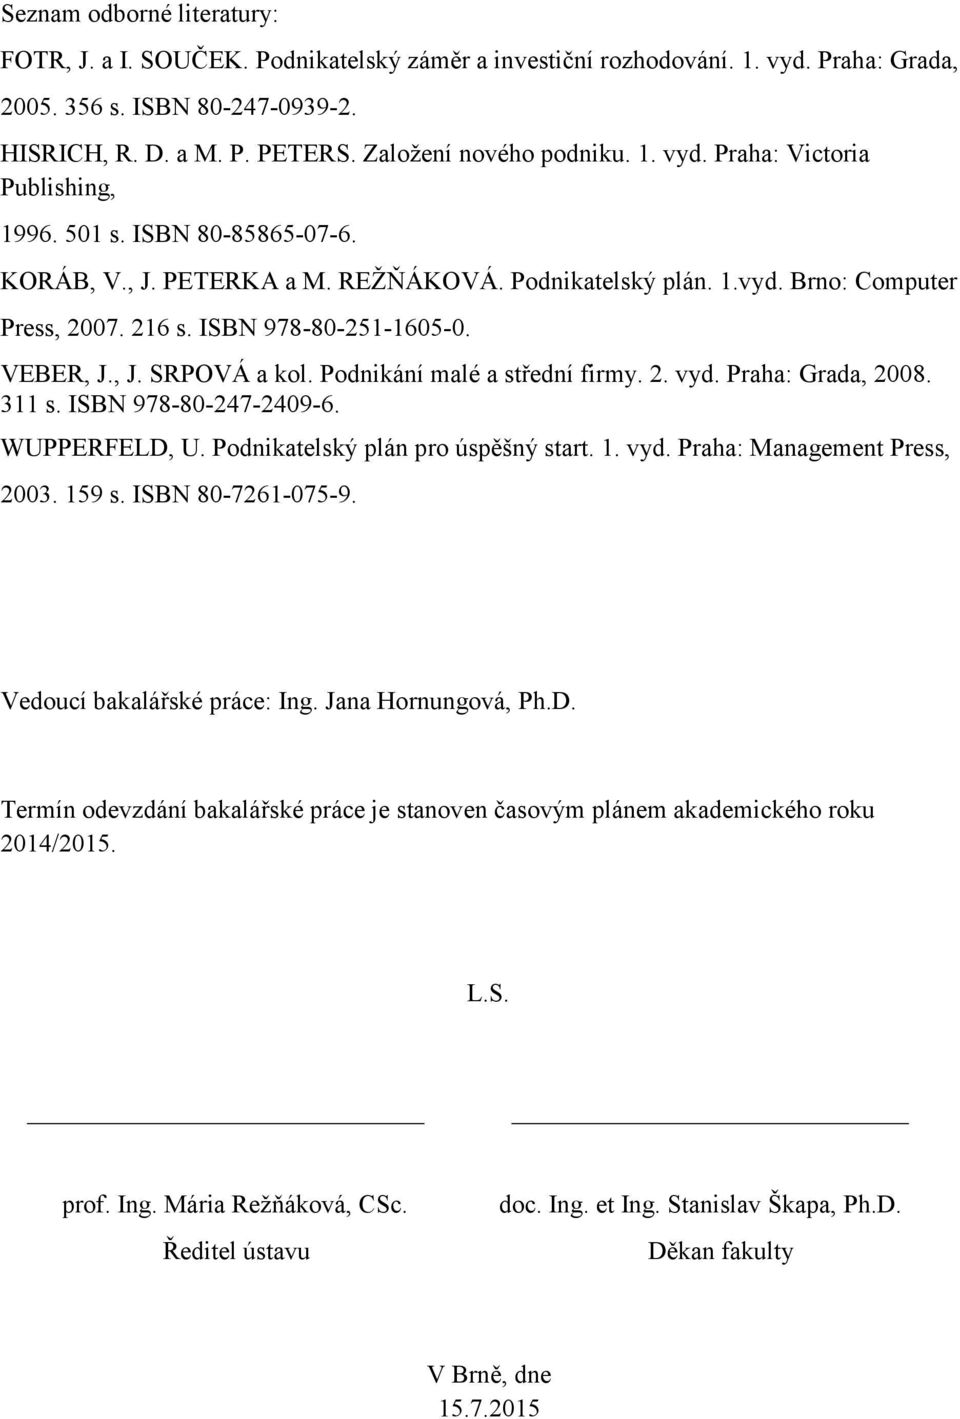 ISBN 978-80-251-1605-0. VEBER, J., J. SRPOVÁ a kol. Podnikání malé a střední firmy. 2. vyd. Praha: Grada, 2008. 311 s. ISBN 978-80-247-2409-6. WUPPERFELD, U. Podnikatelský plán pro úspěšný start. 1.